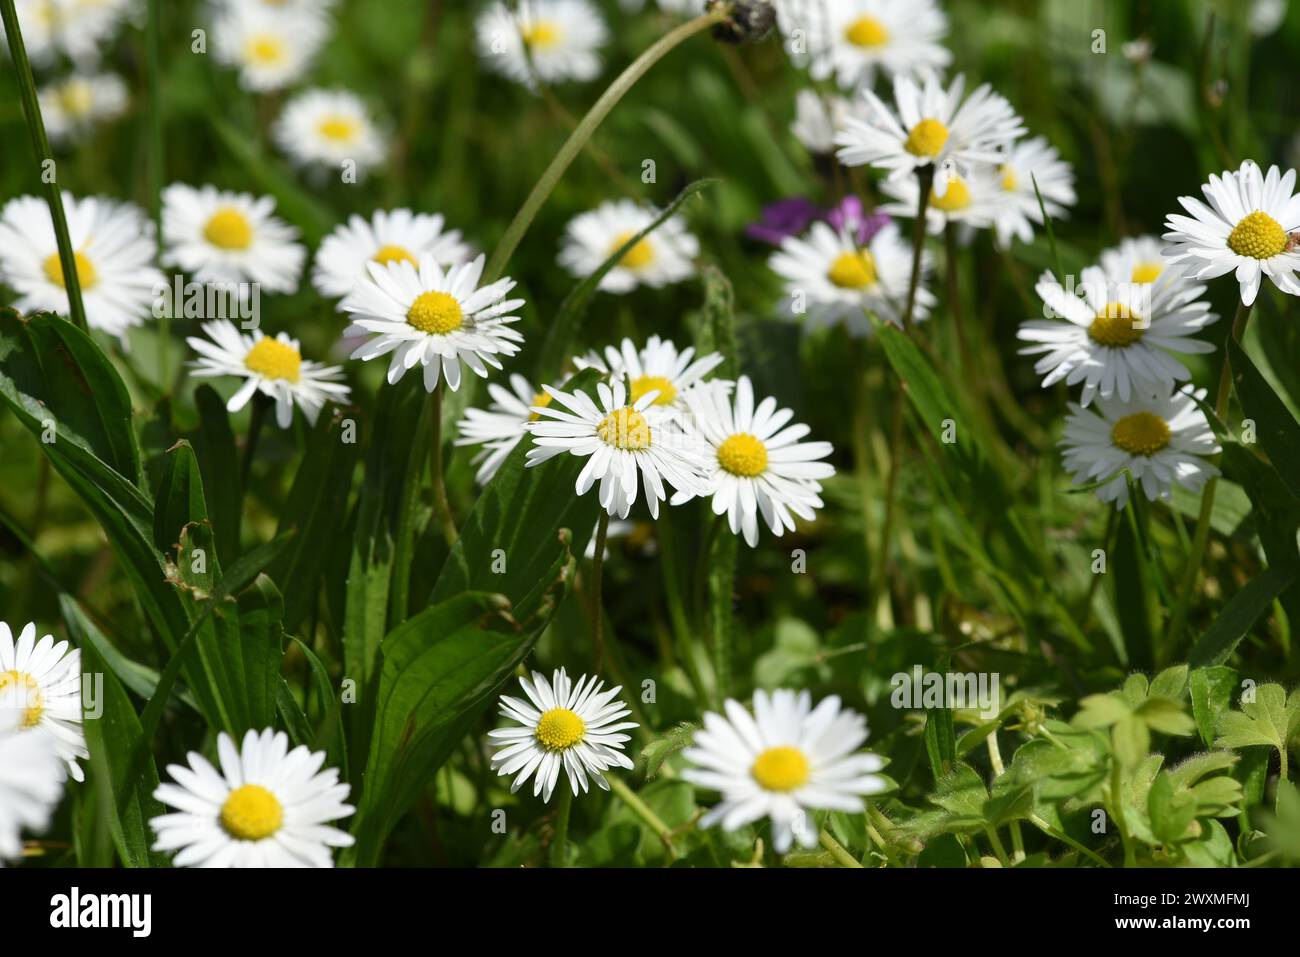 Zwerggaensebluemchen, Bellium bellidioides auch Spatelgaensebluemchen genannt, ist eine Pflanzenart in der Gattung Gaensebluemchen. Dwarf daisy, Belli Stock Photo